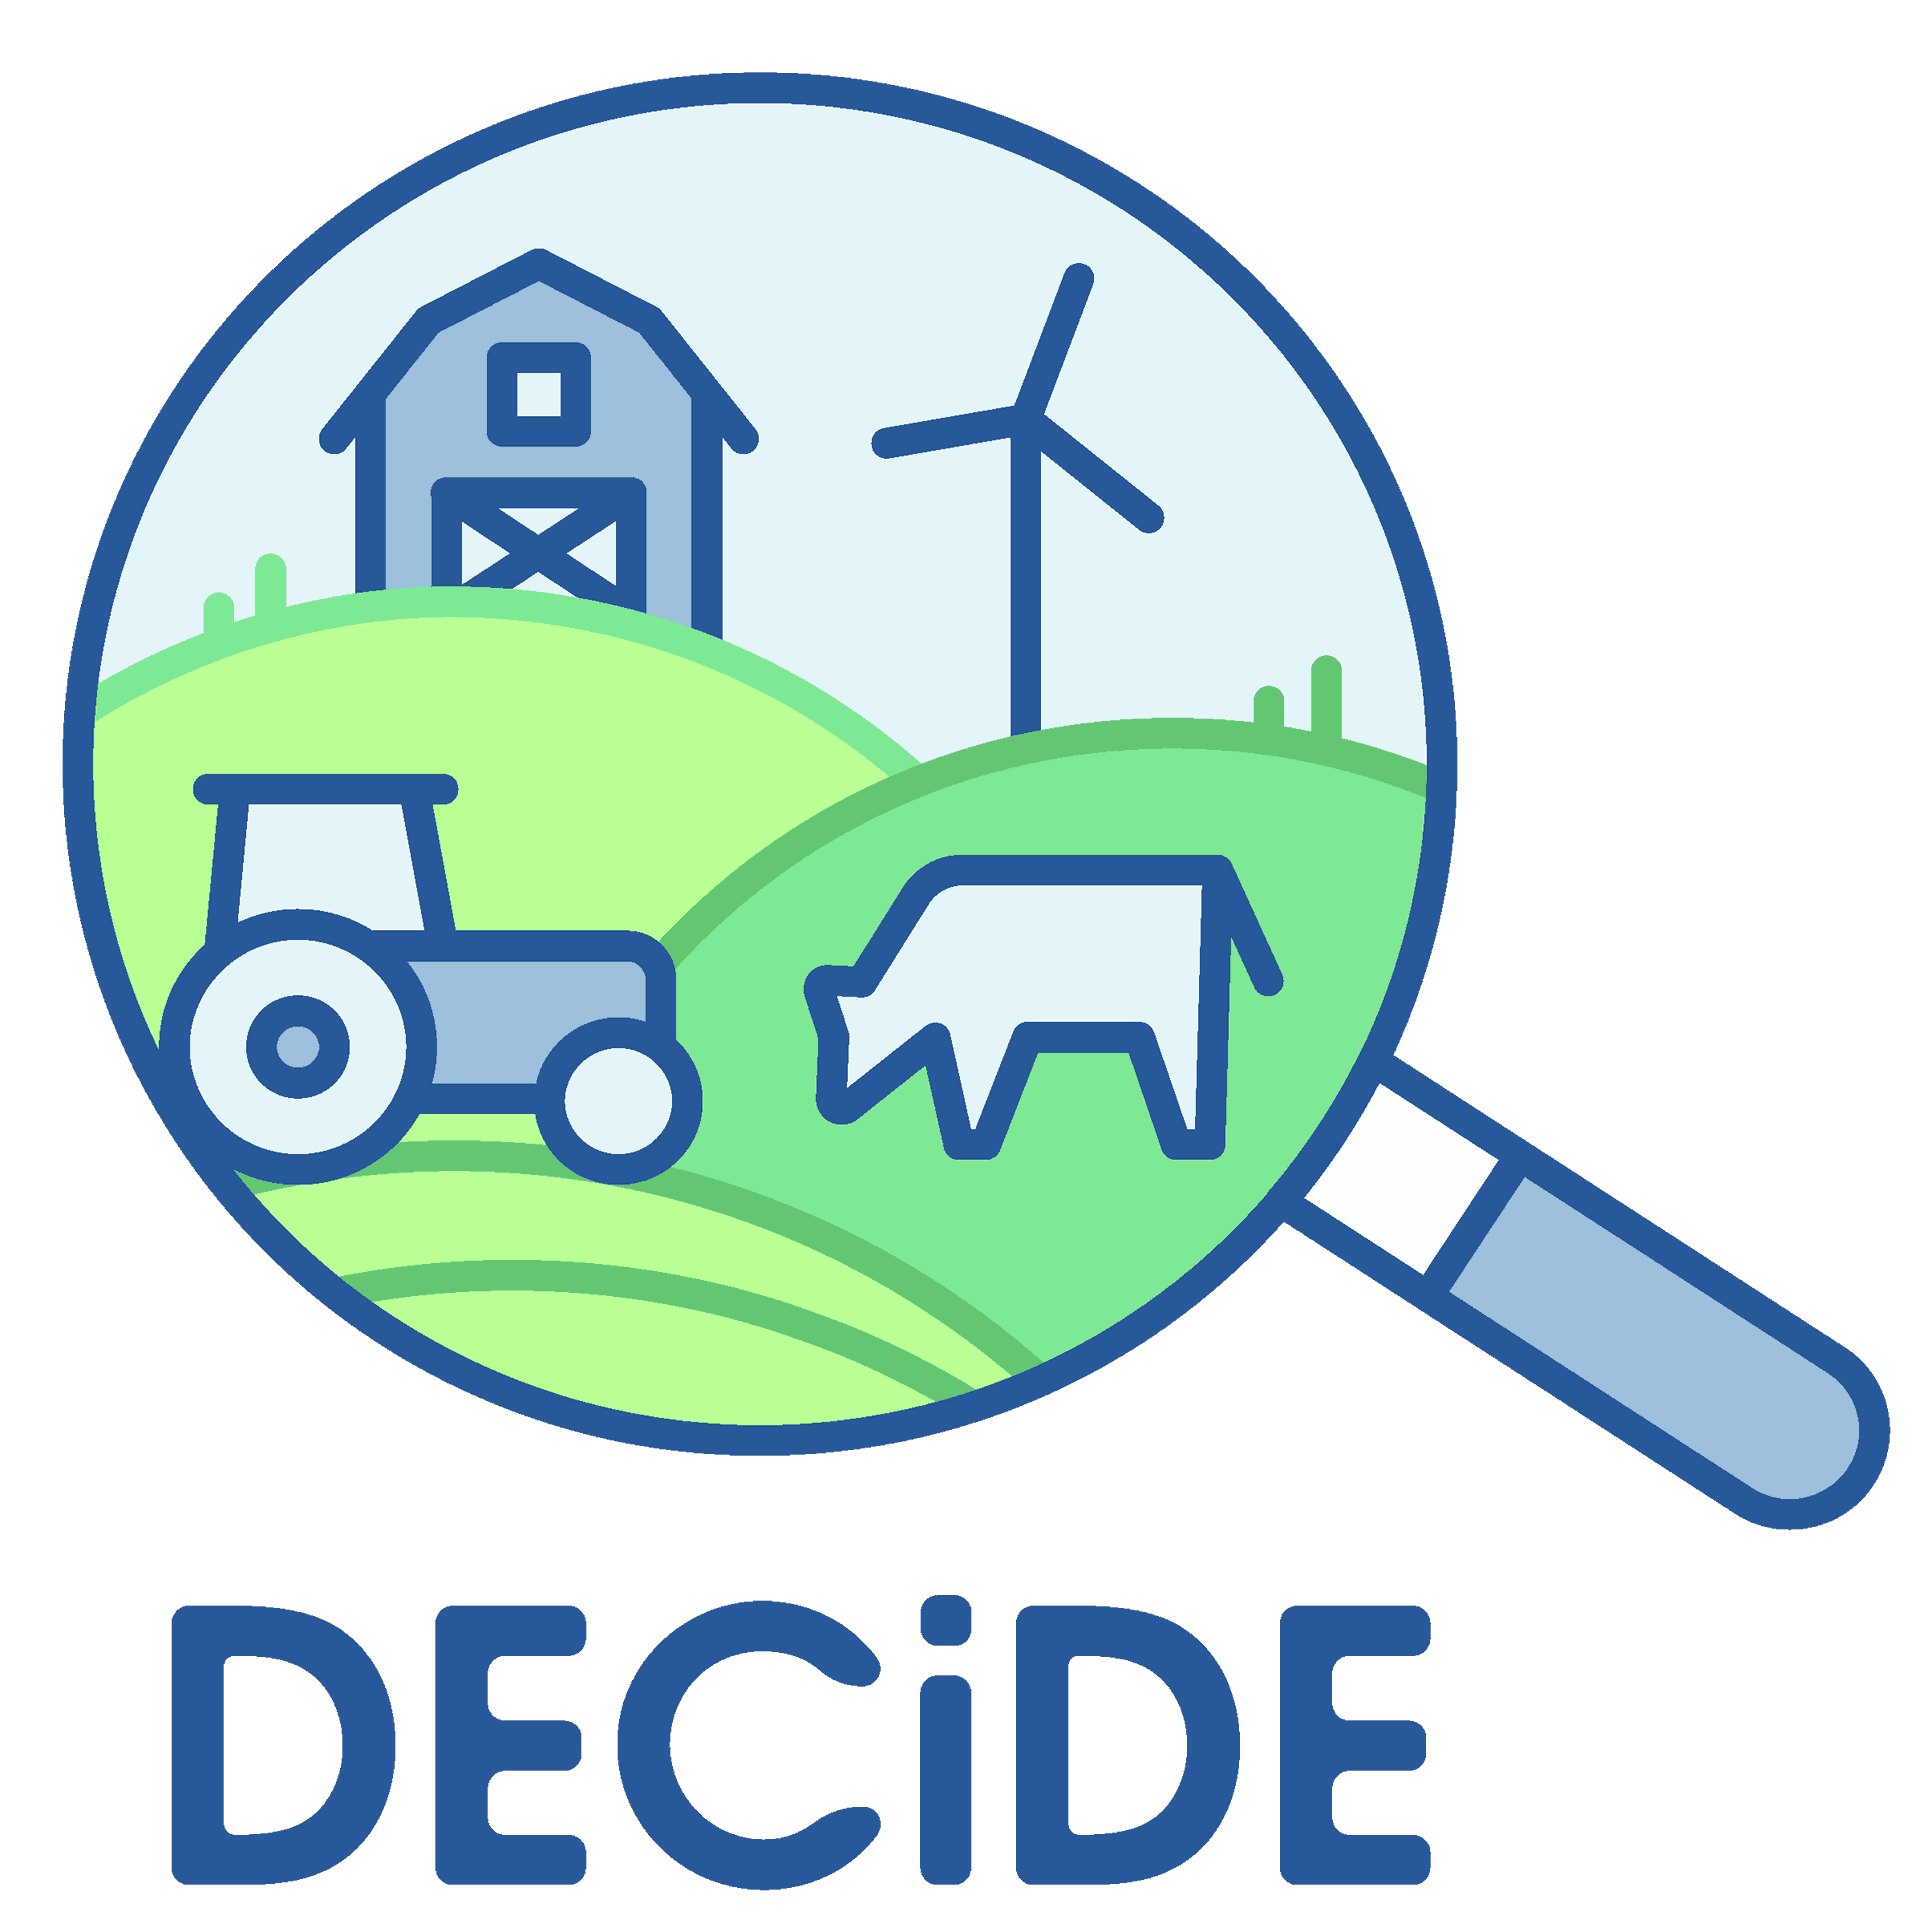 DECiDE permet d’évaluer l’empreinte carbone, les émissions d’ammoniac et la consommation énergétique d’une exploitation agricole et de les rapporter par unité de production ou par hectare.